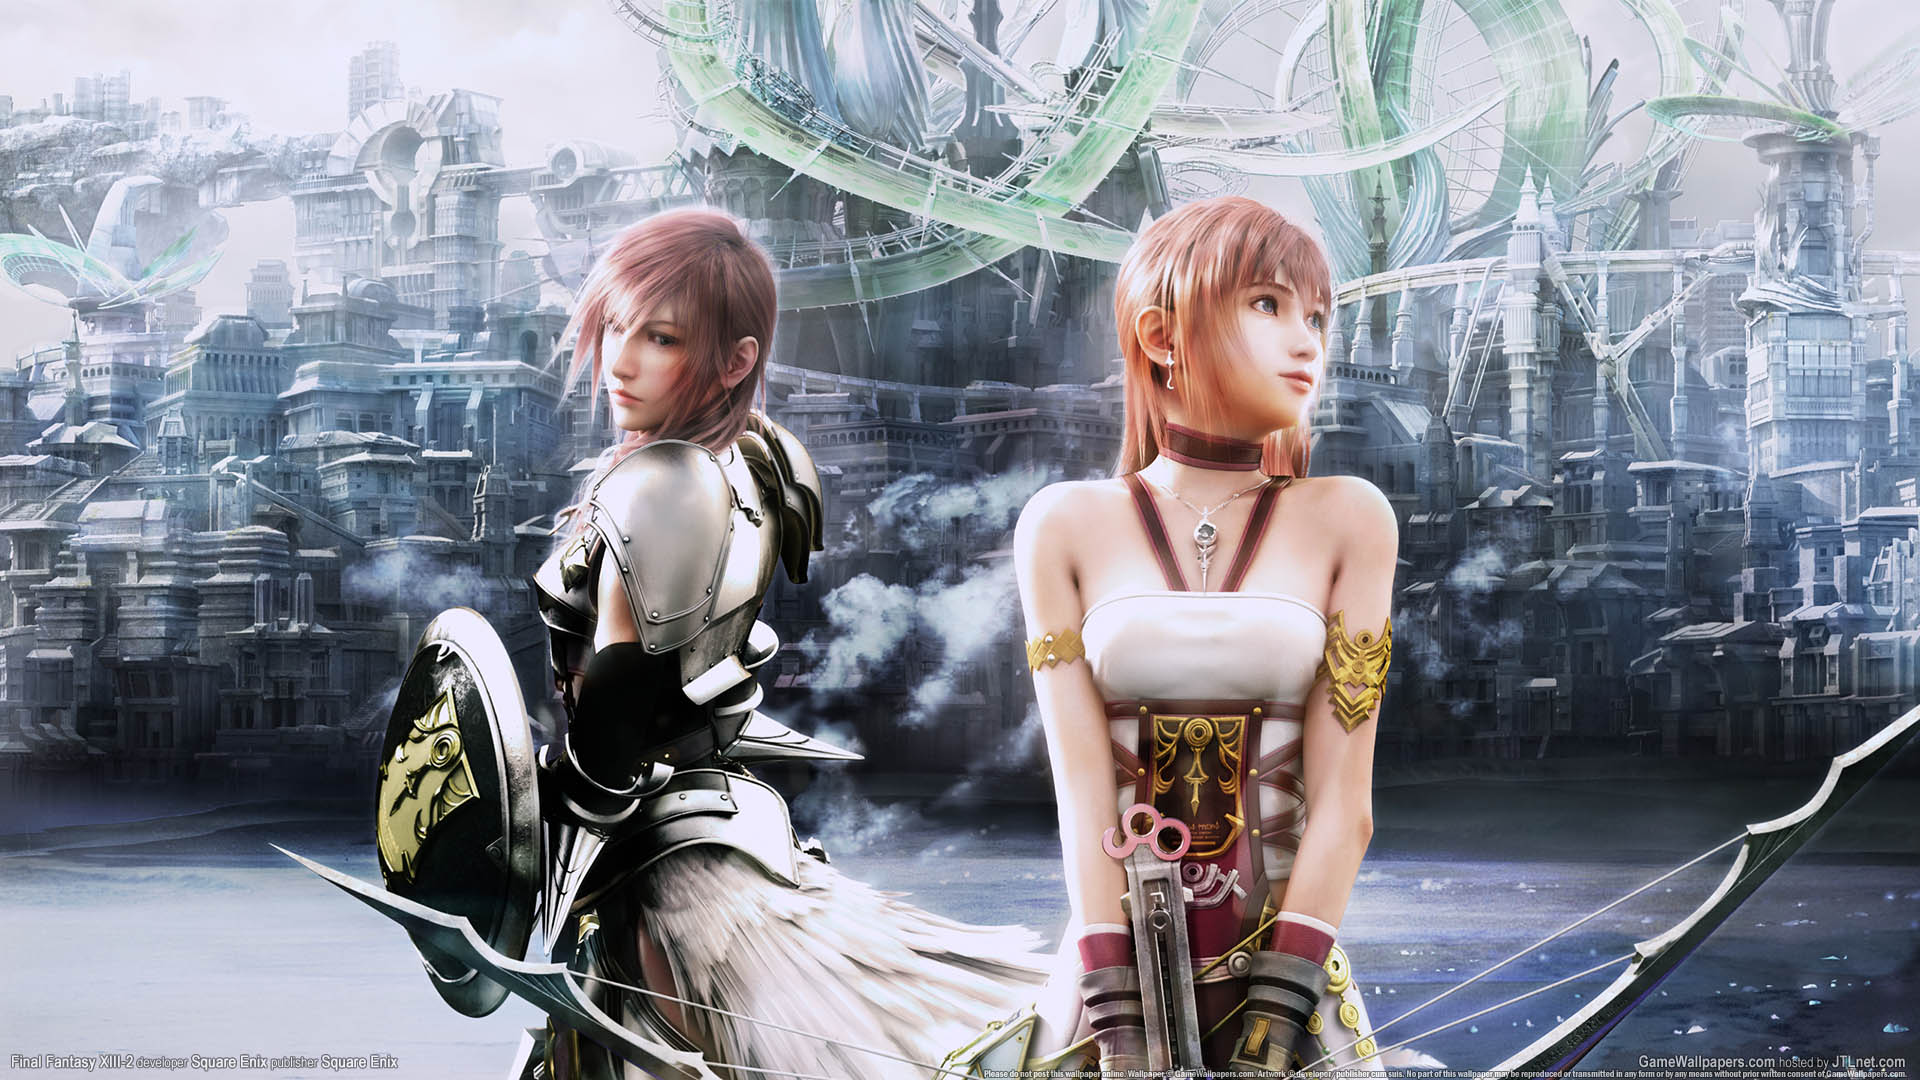 Final Fantasy XIII - 2 achtergrond 01 1920x1080